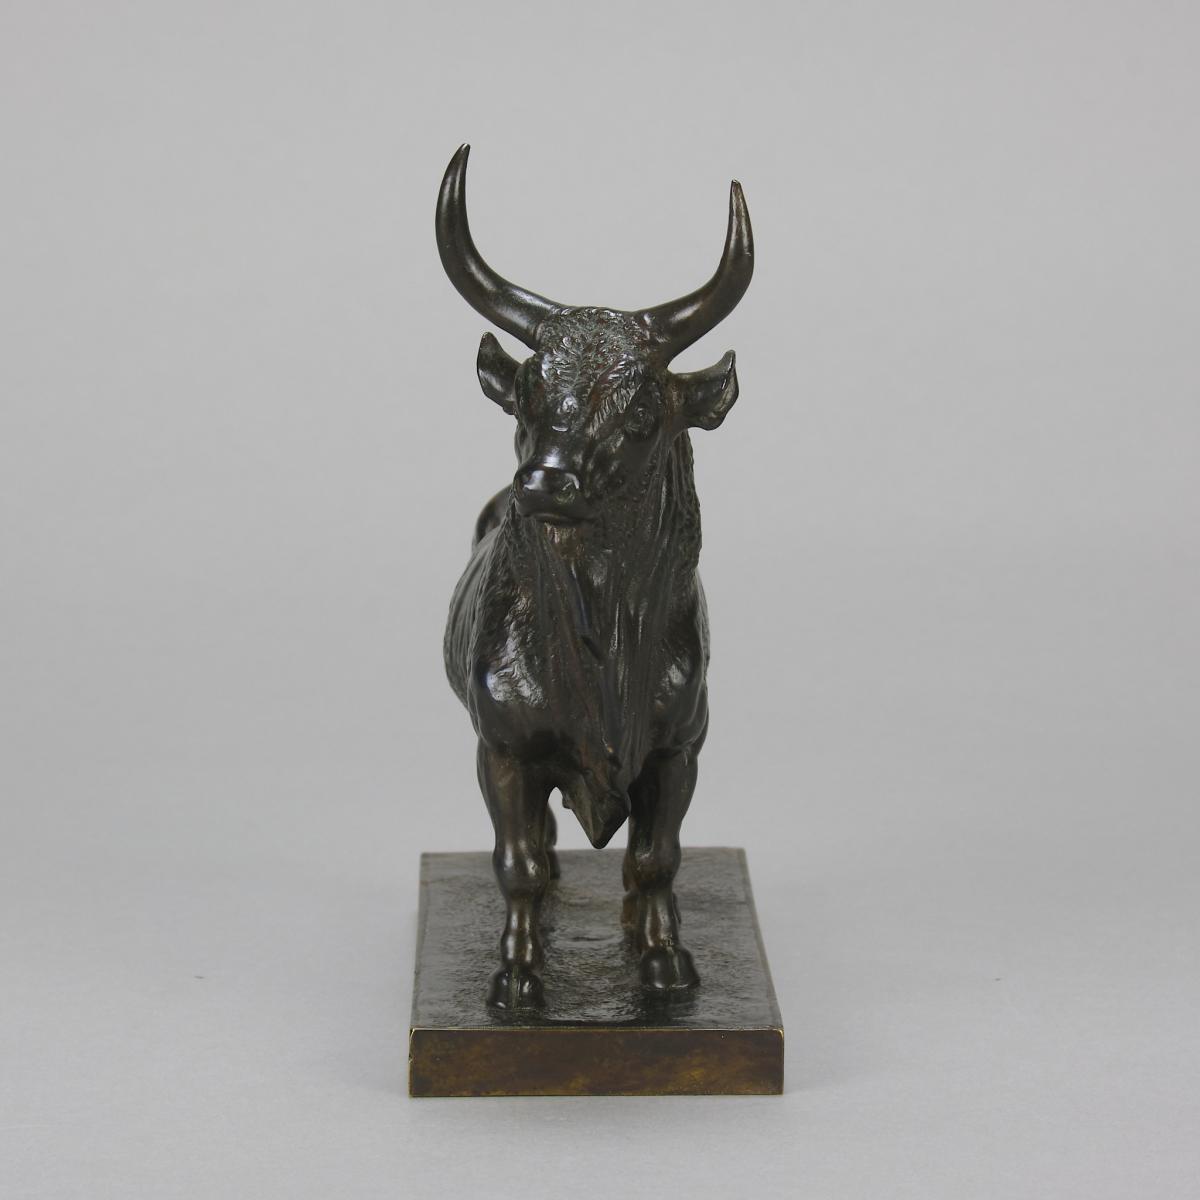 19th Century Animalier Bronze entitled "Taureau Vainqueur" by Jean-Baptiste Clesinger